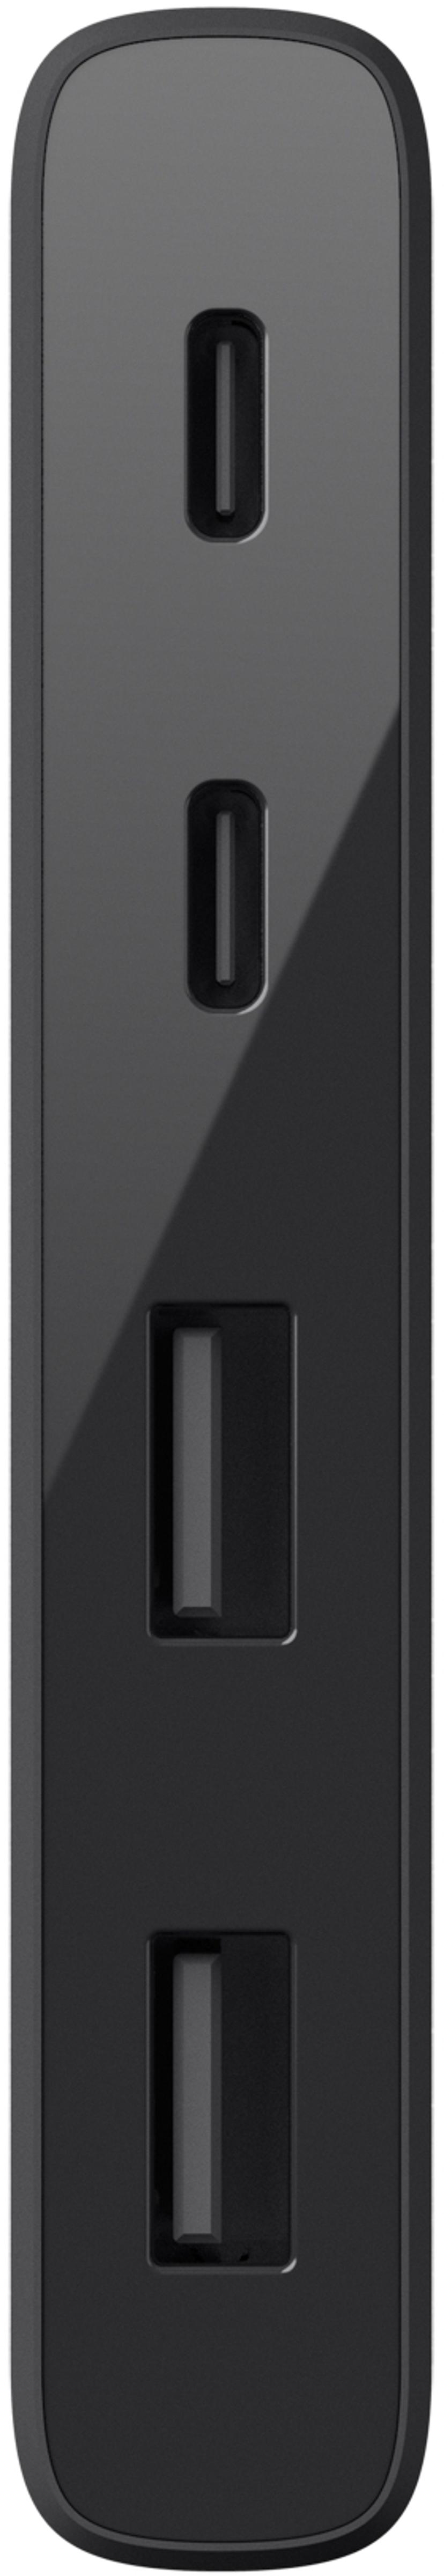 Belkin 4-Port USB-C Hub